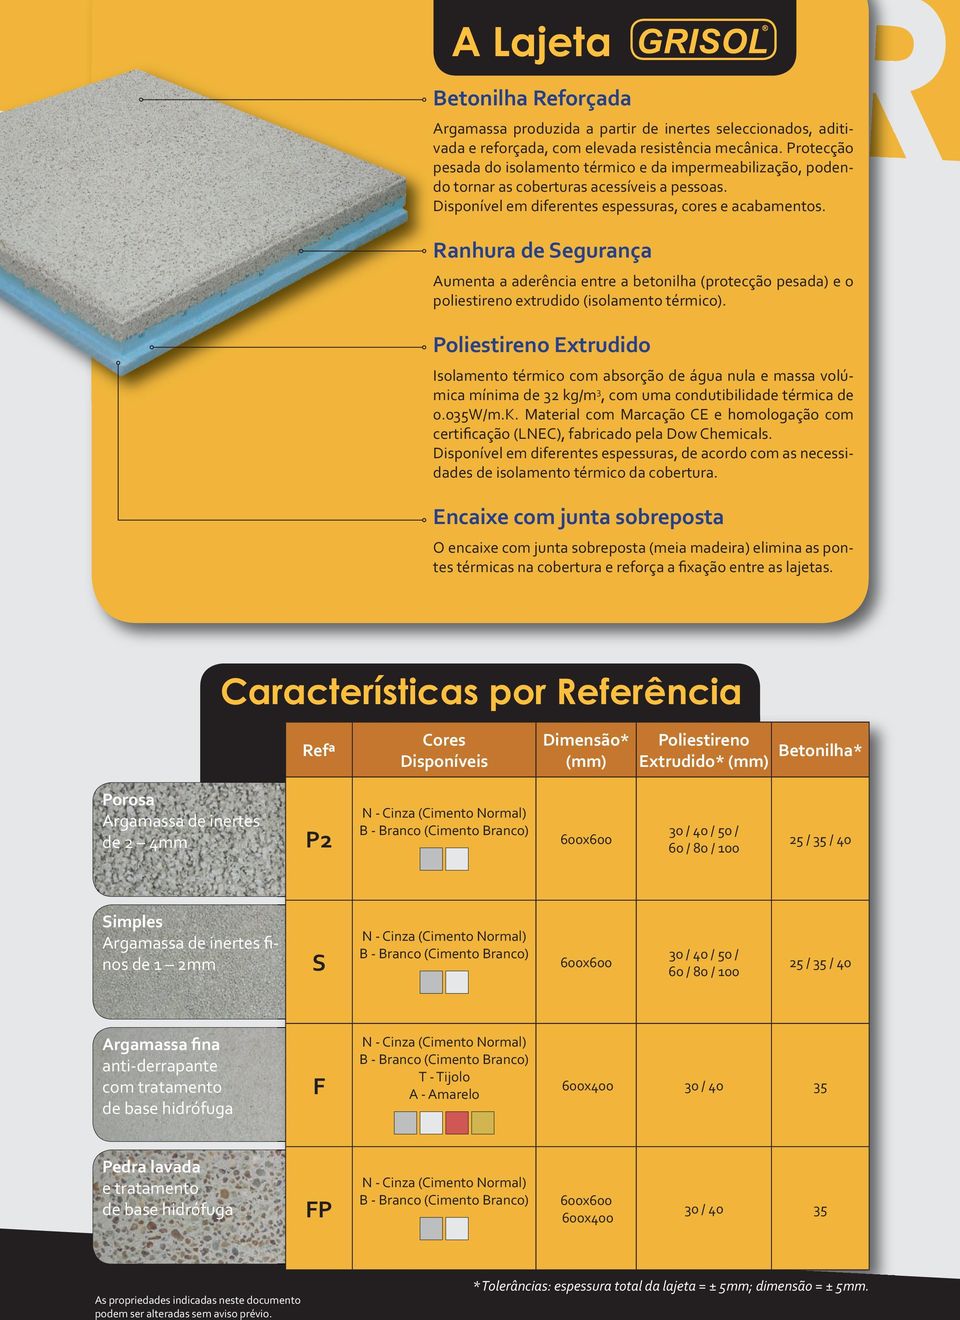 Ranhura de Segurança Aumenta a aderência entre a betonilha (protecção pesada) e o poliestireno extrudido (isolamento térmico).